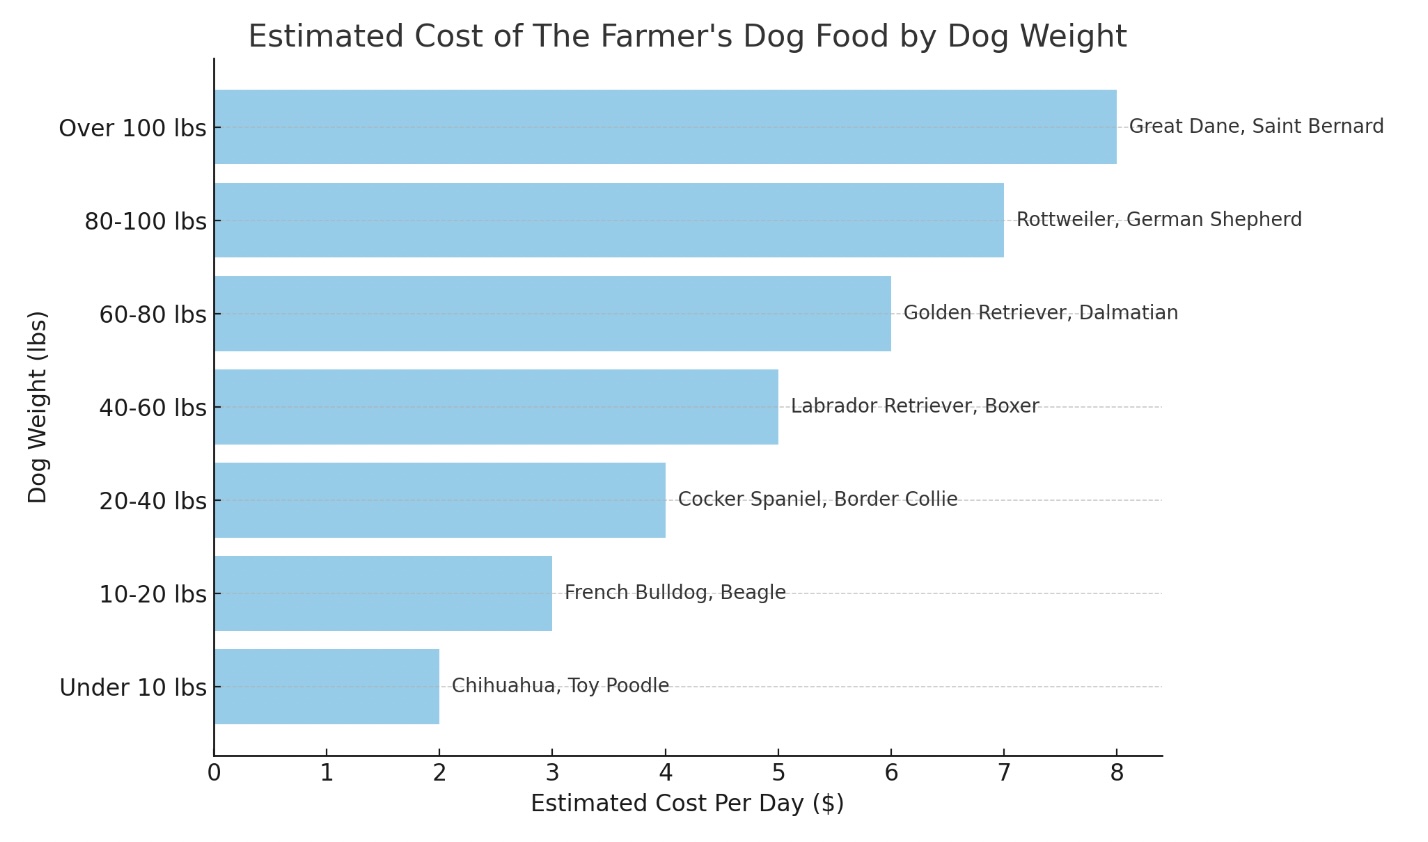 De prijs van Farmer's Dog naar ras/gewicht